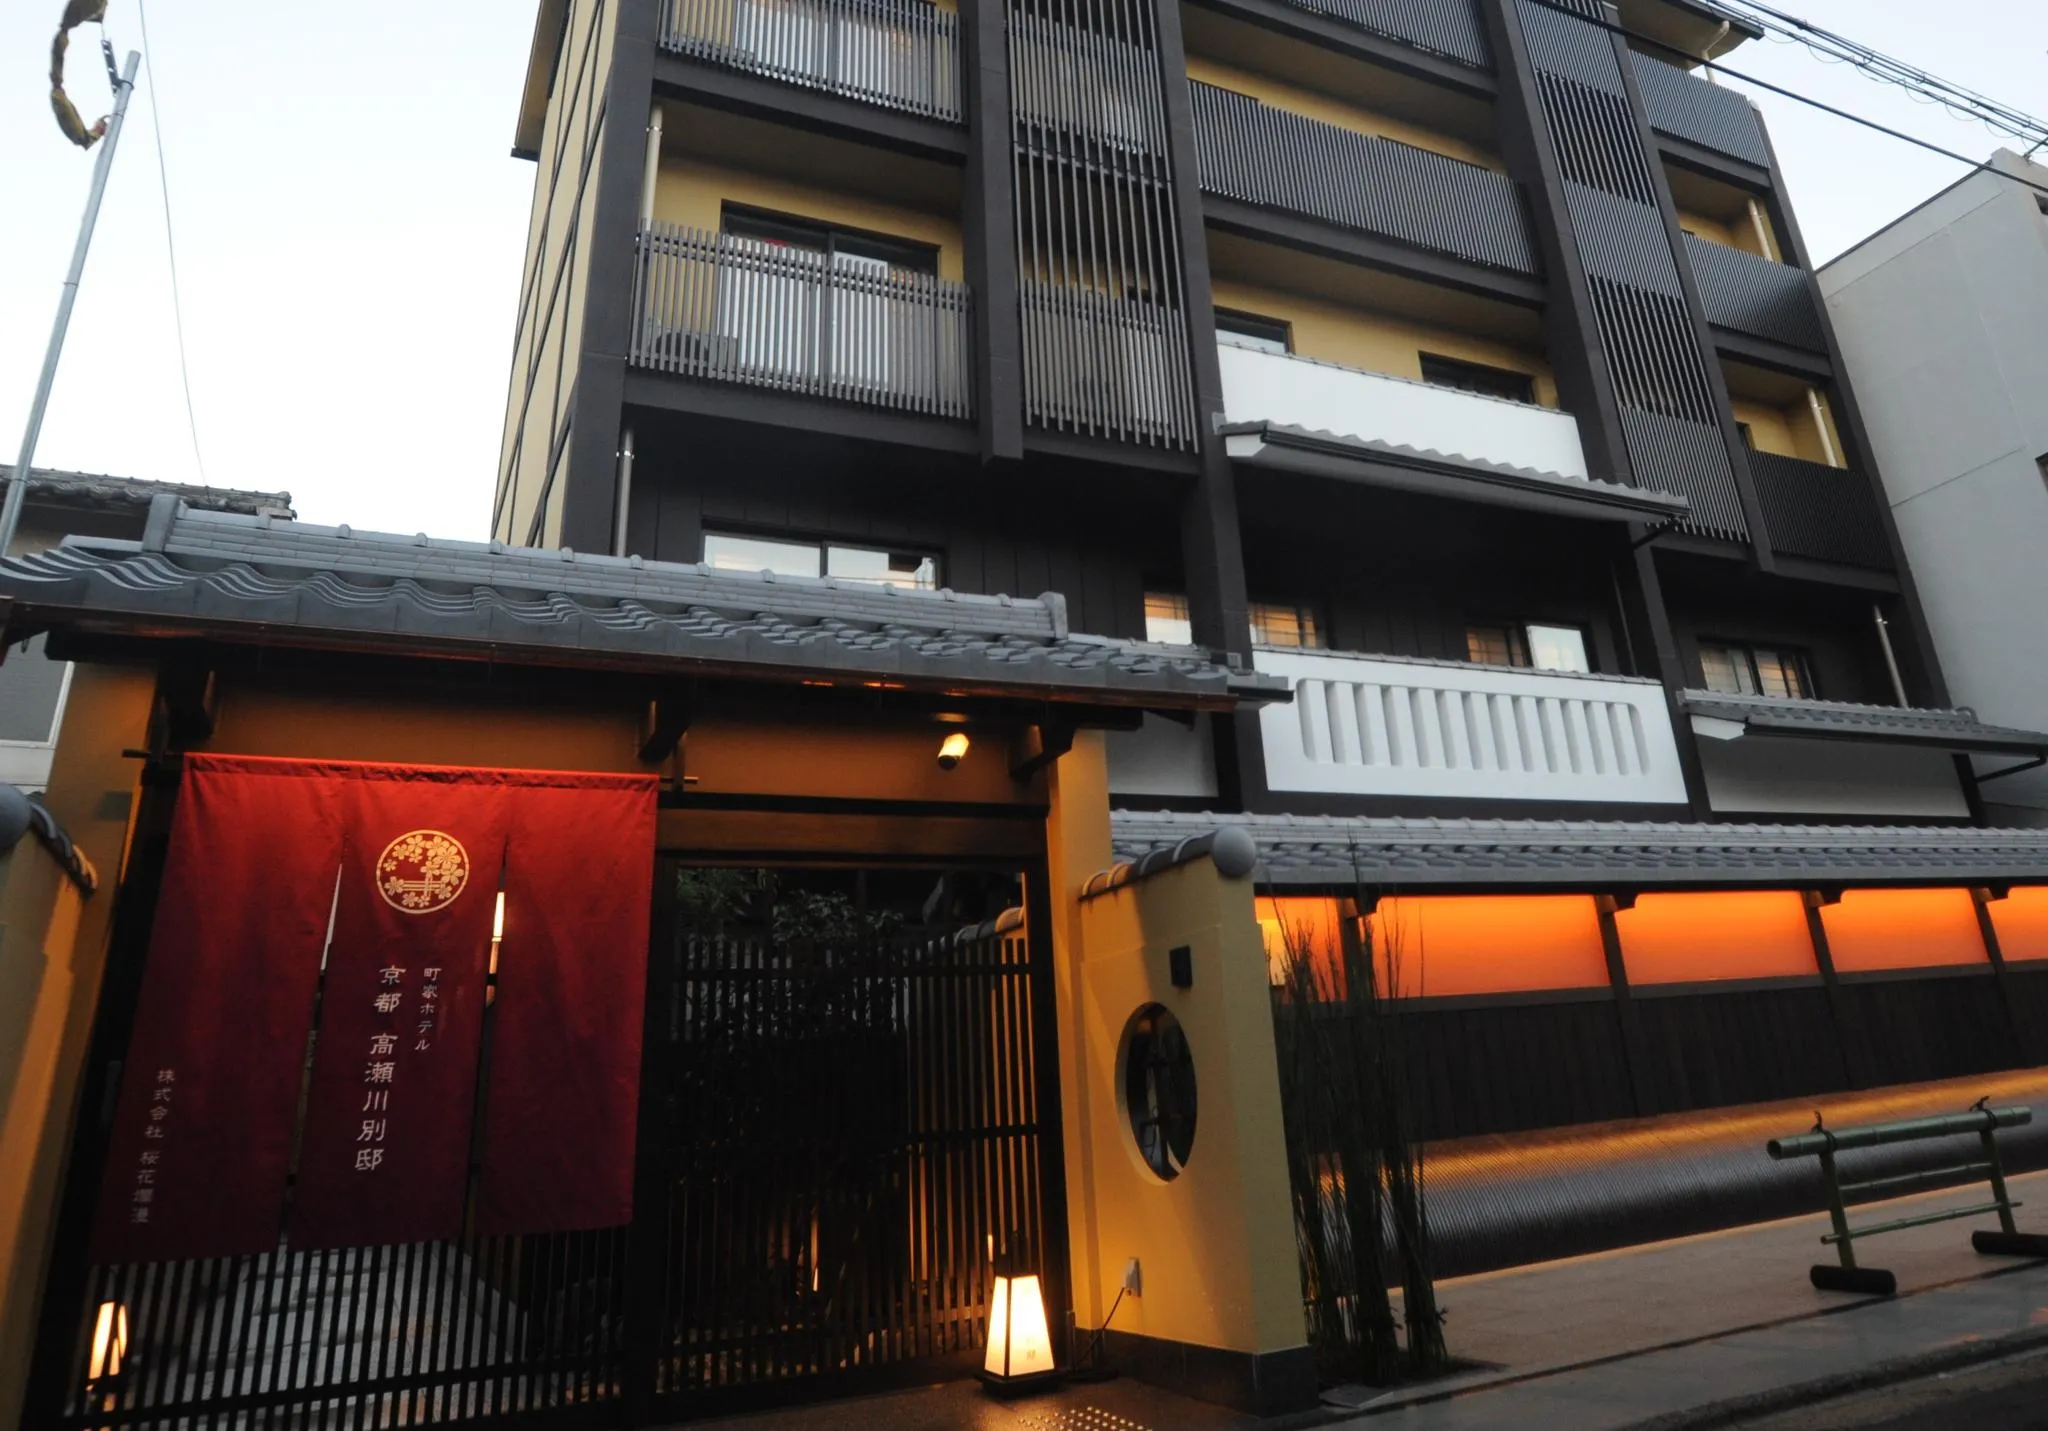 京都駅周辺で人気のホテル 旅館 21年 宿泊予約ならrelux